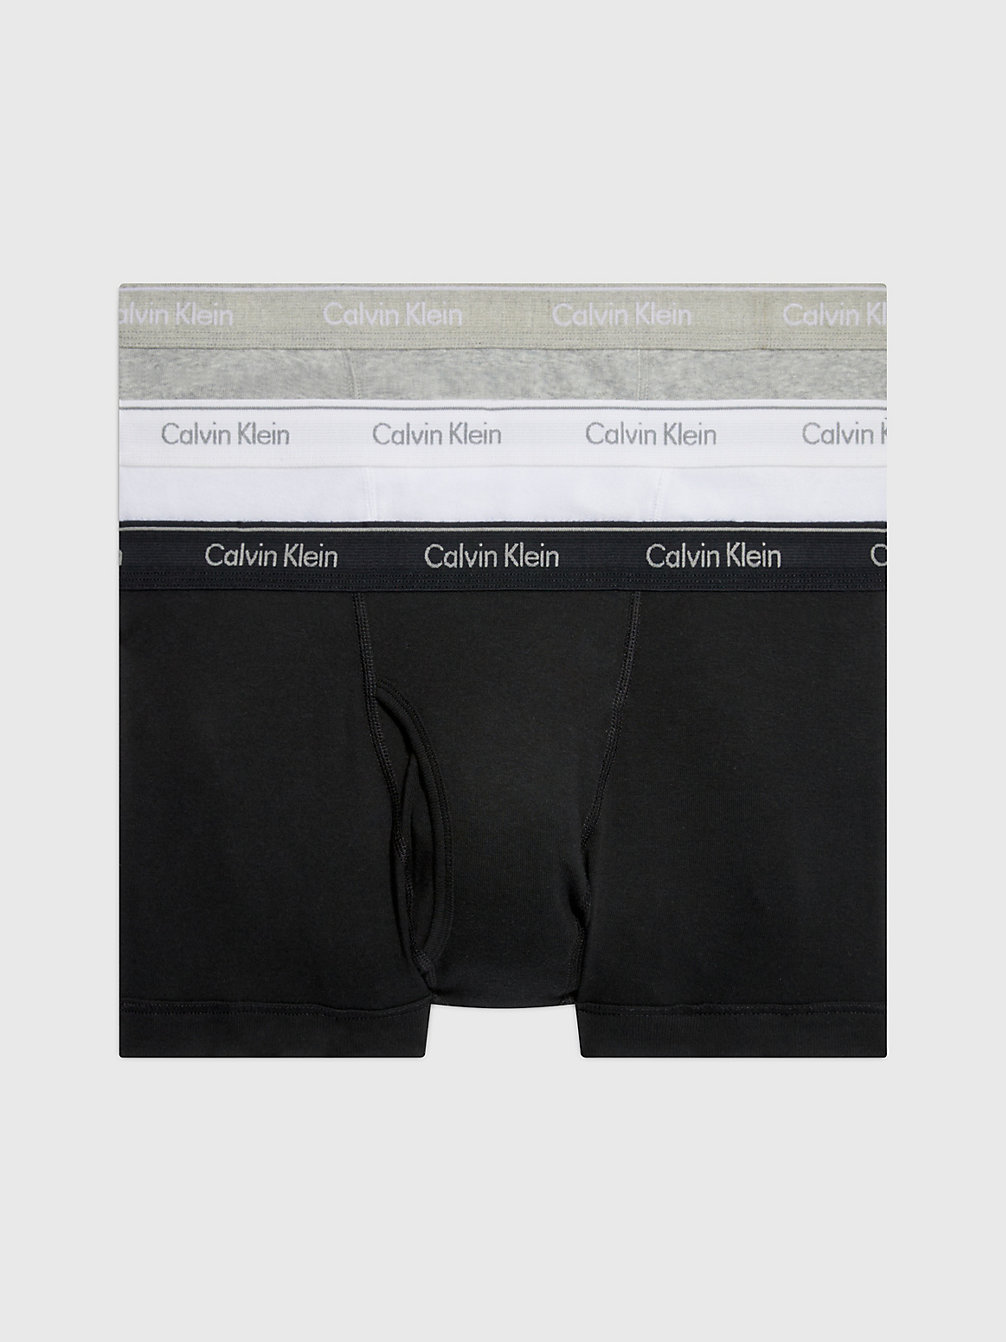 BLACK/WHITE/GREY HEATHER > Комплект боксеров 3 шт. - Cotton Classics > undefined женщины - Calvin Klein